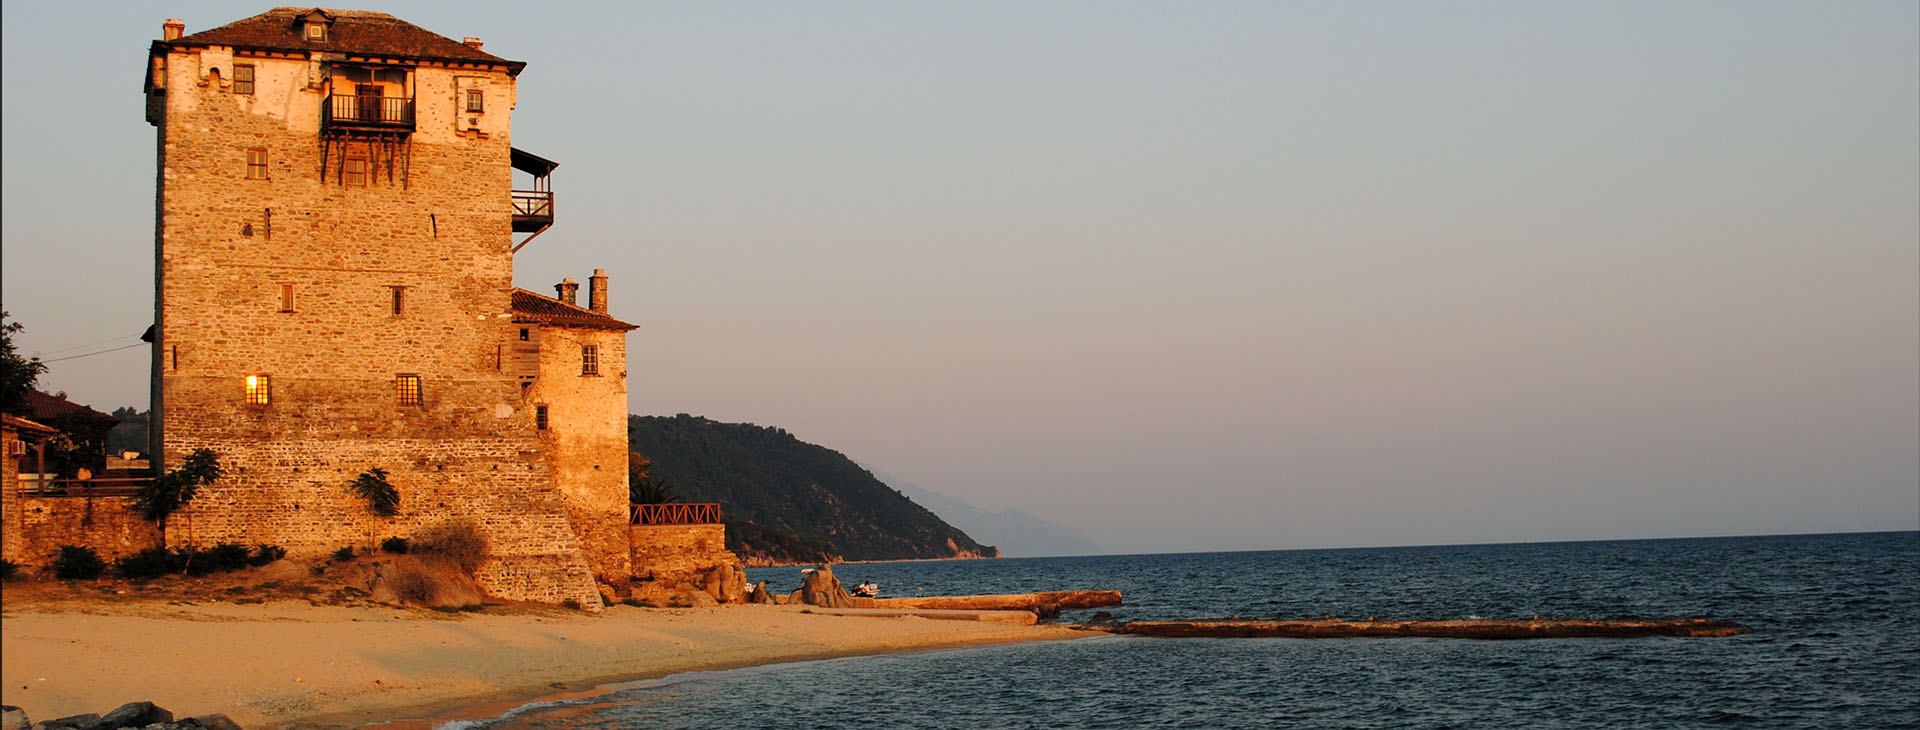 The Tower of Ouranoupolis, Athos, Halkidiki (Chalkidiki)